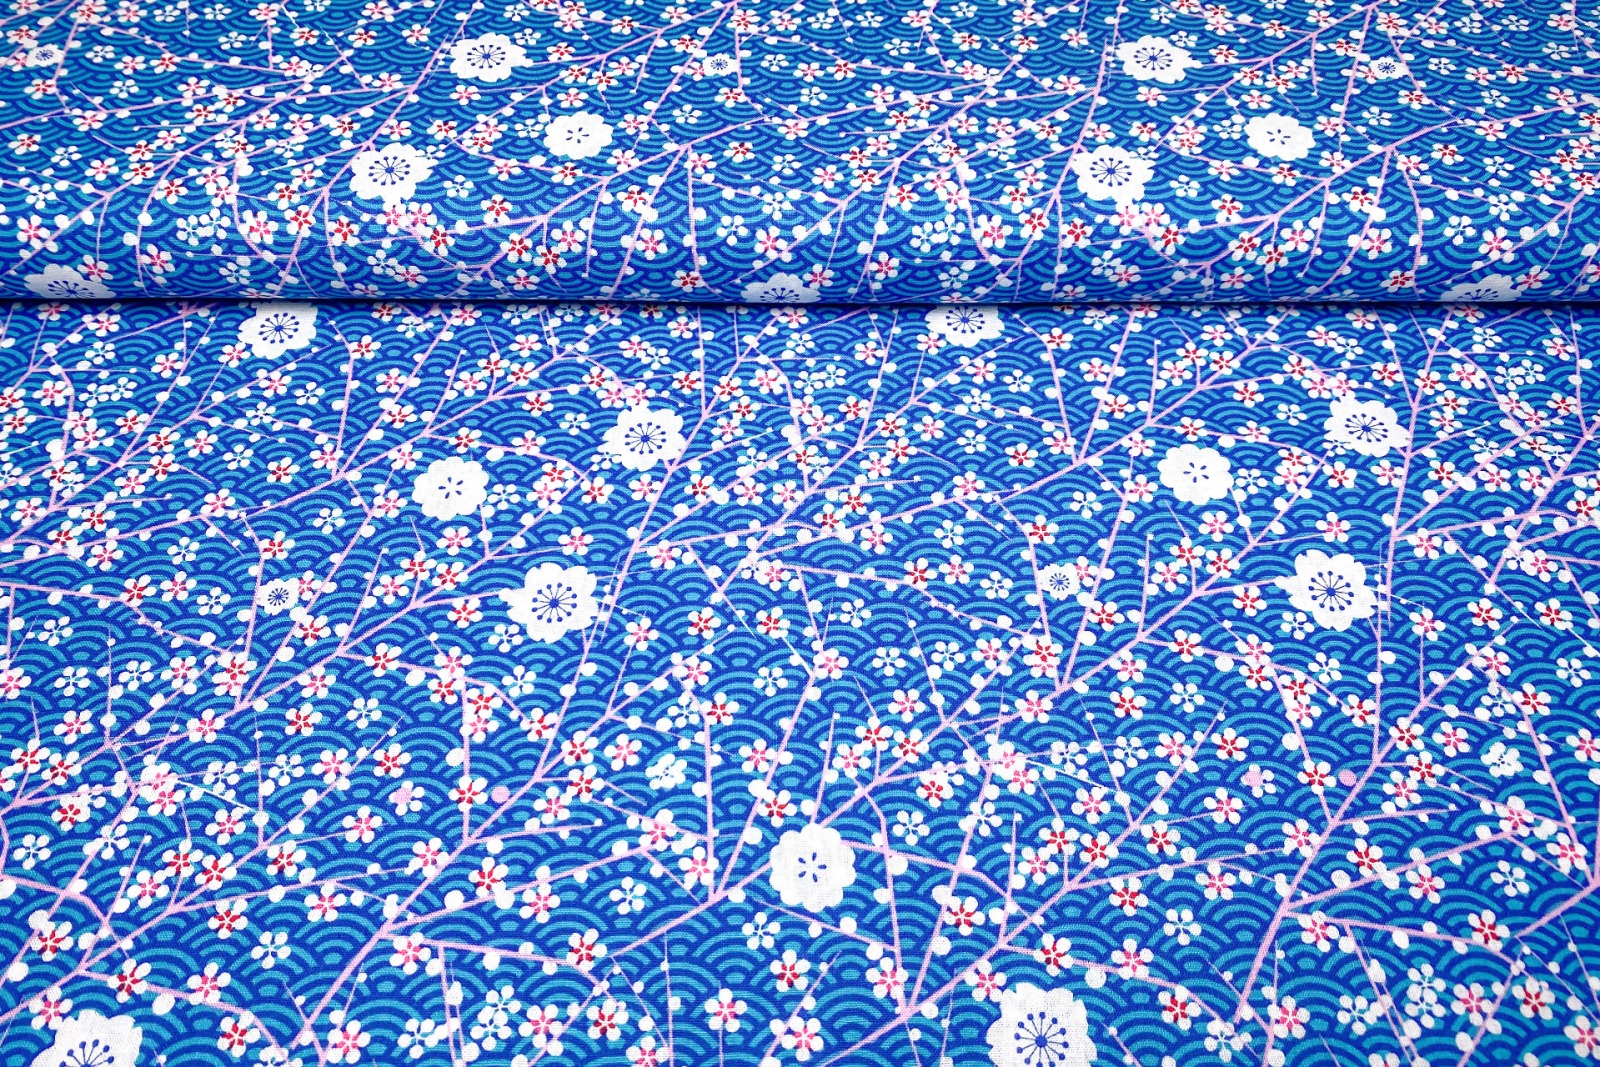 Baumwollwebware Kirschblüte blau | 10,00 EUR/m 2